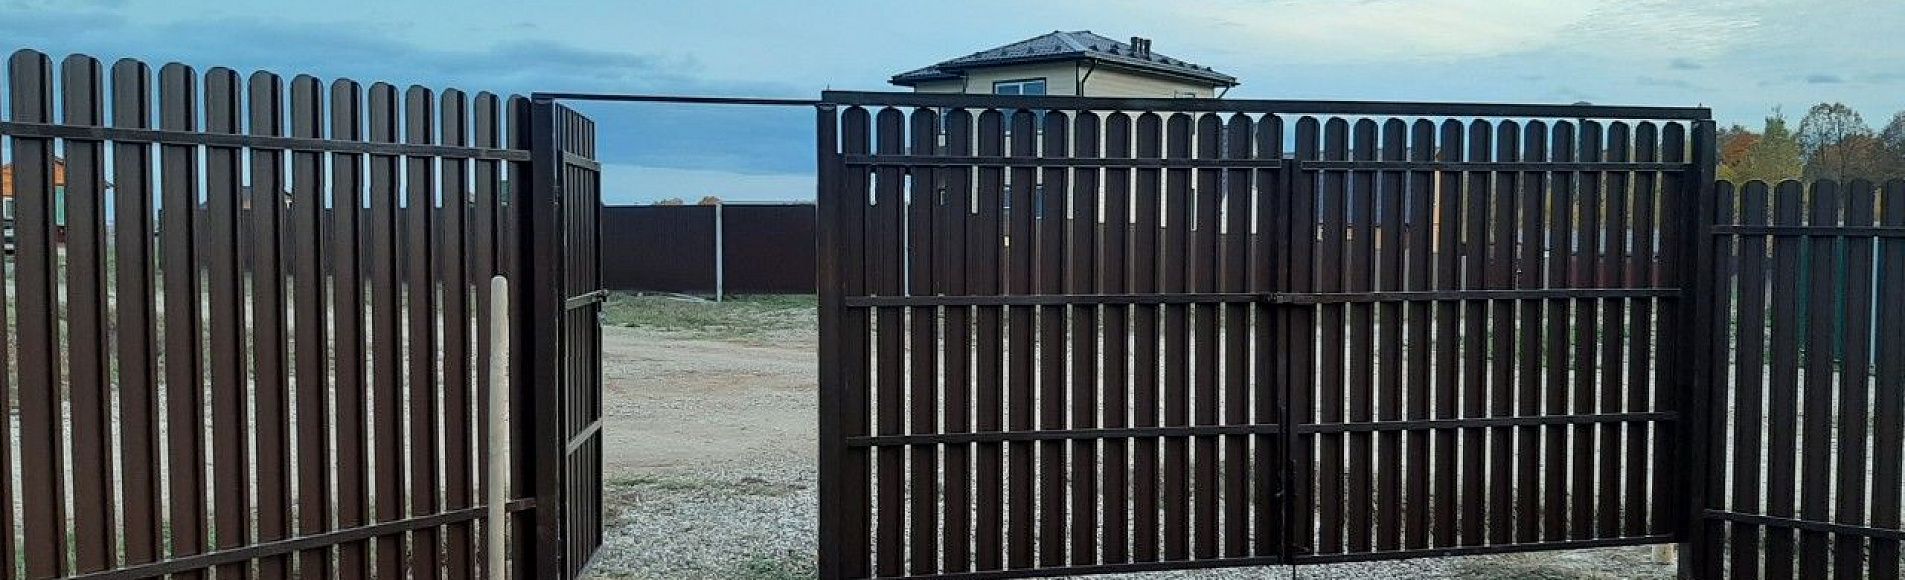 Металлические распашные ворота Самара цены, фото, стоимость, проекты | СтройДом